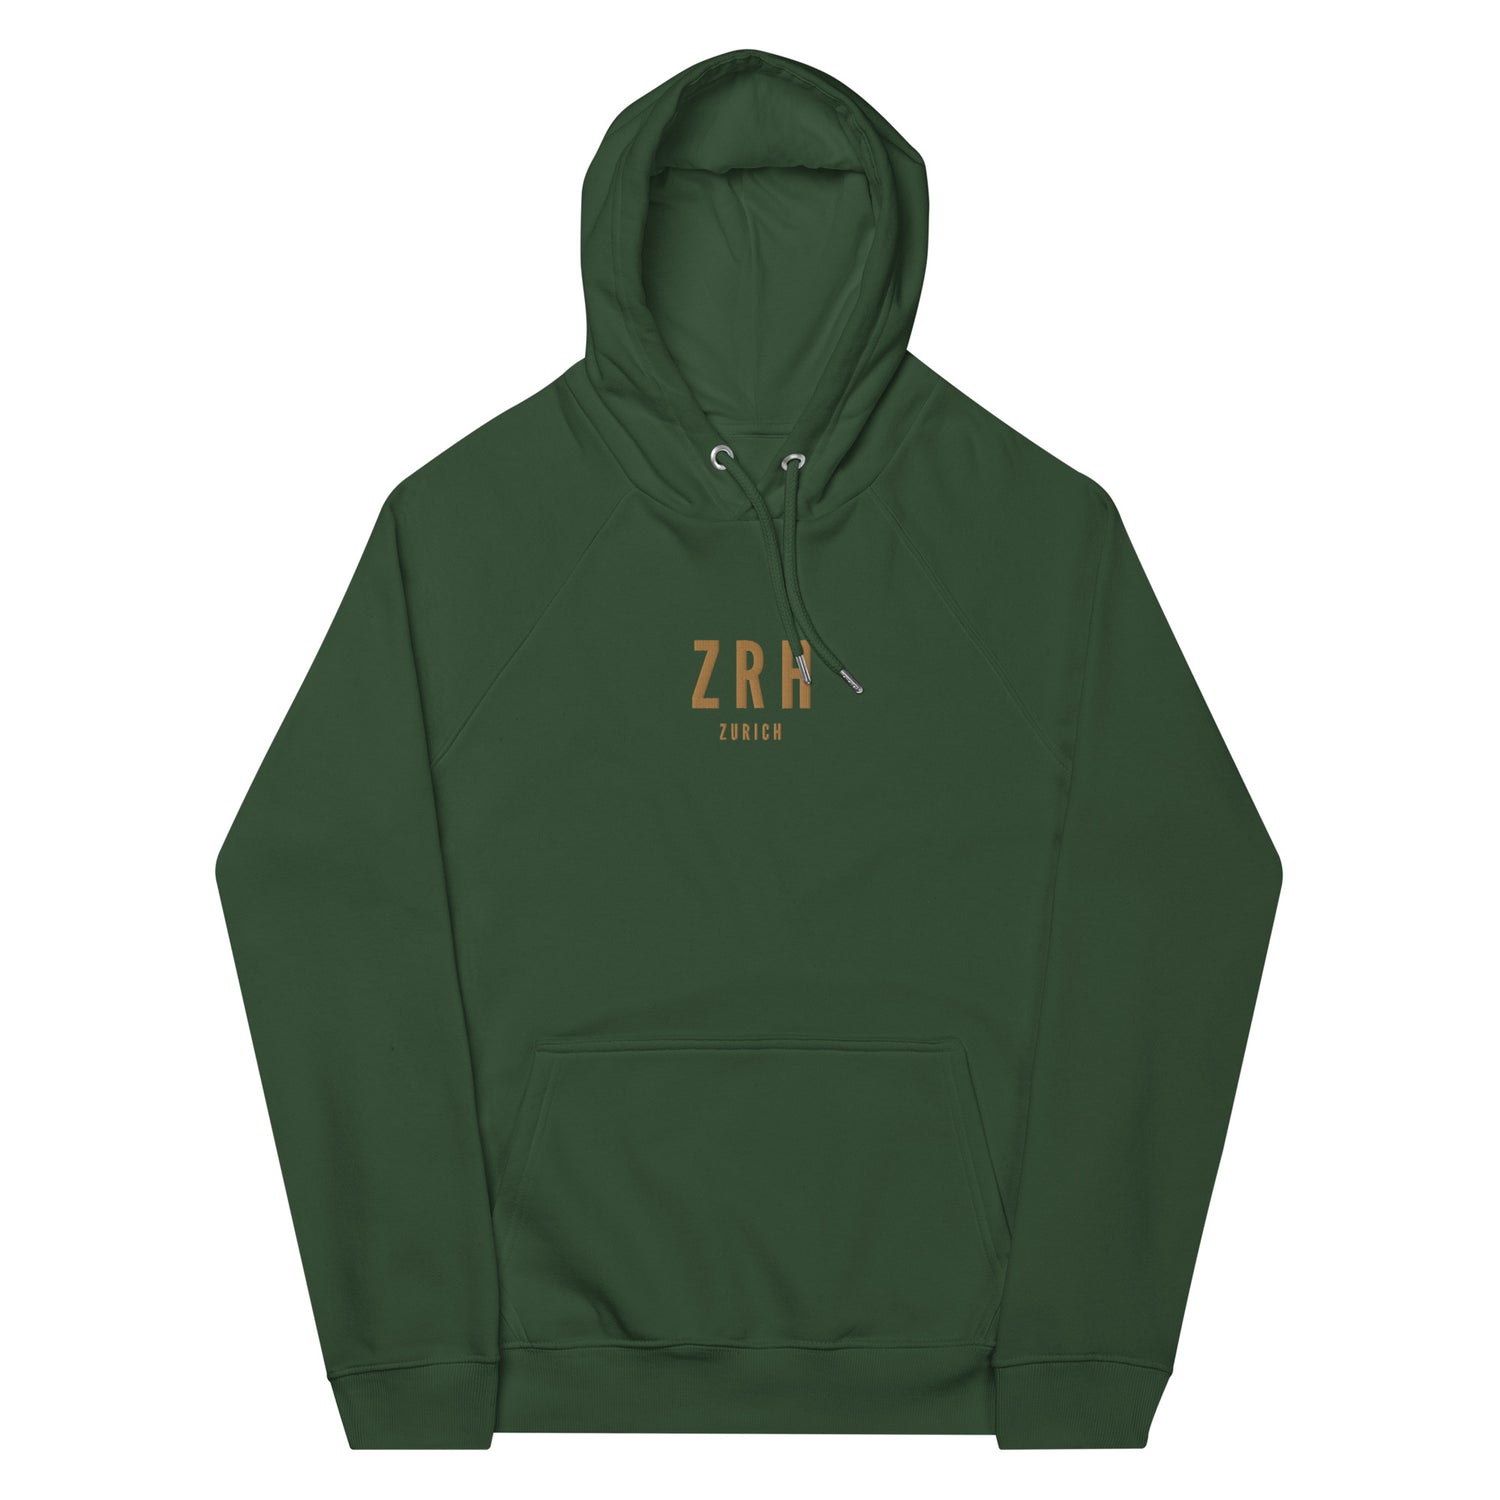 Zurich Switzerland Hoodies and Sweatshirts • ZRH Airport Code